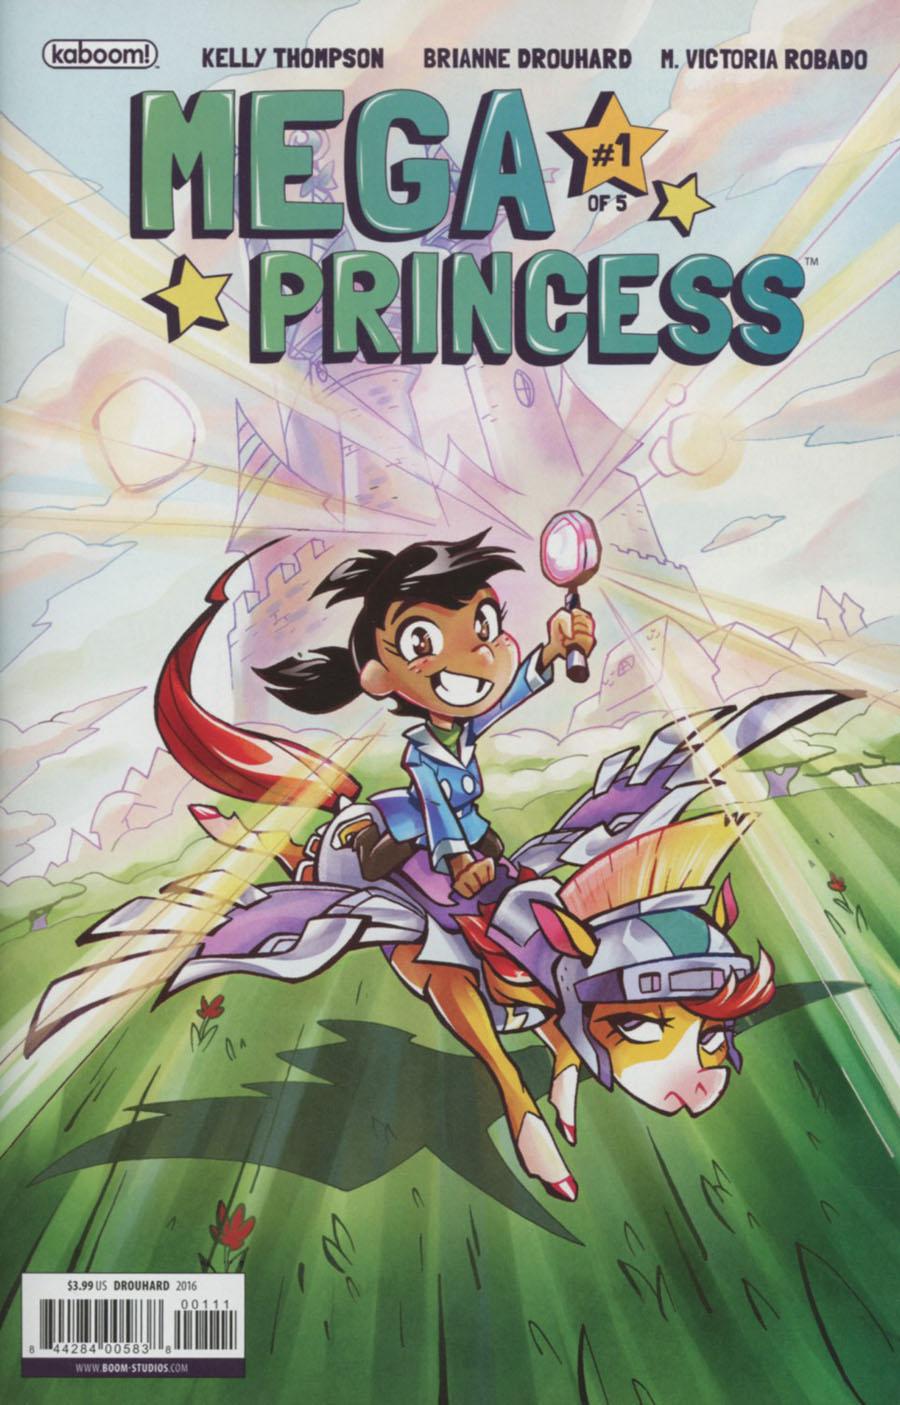 Mega Princess Vol. 1 #1